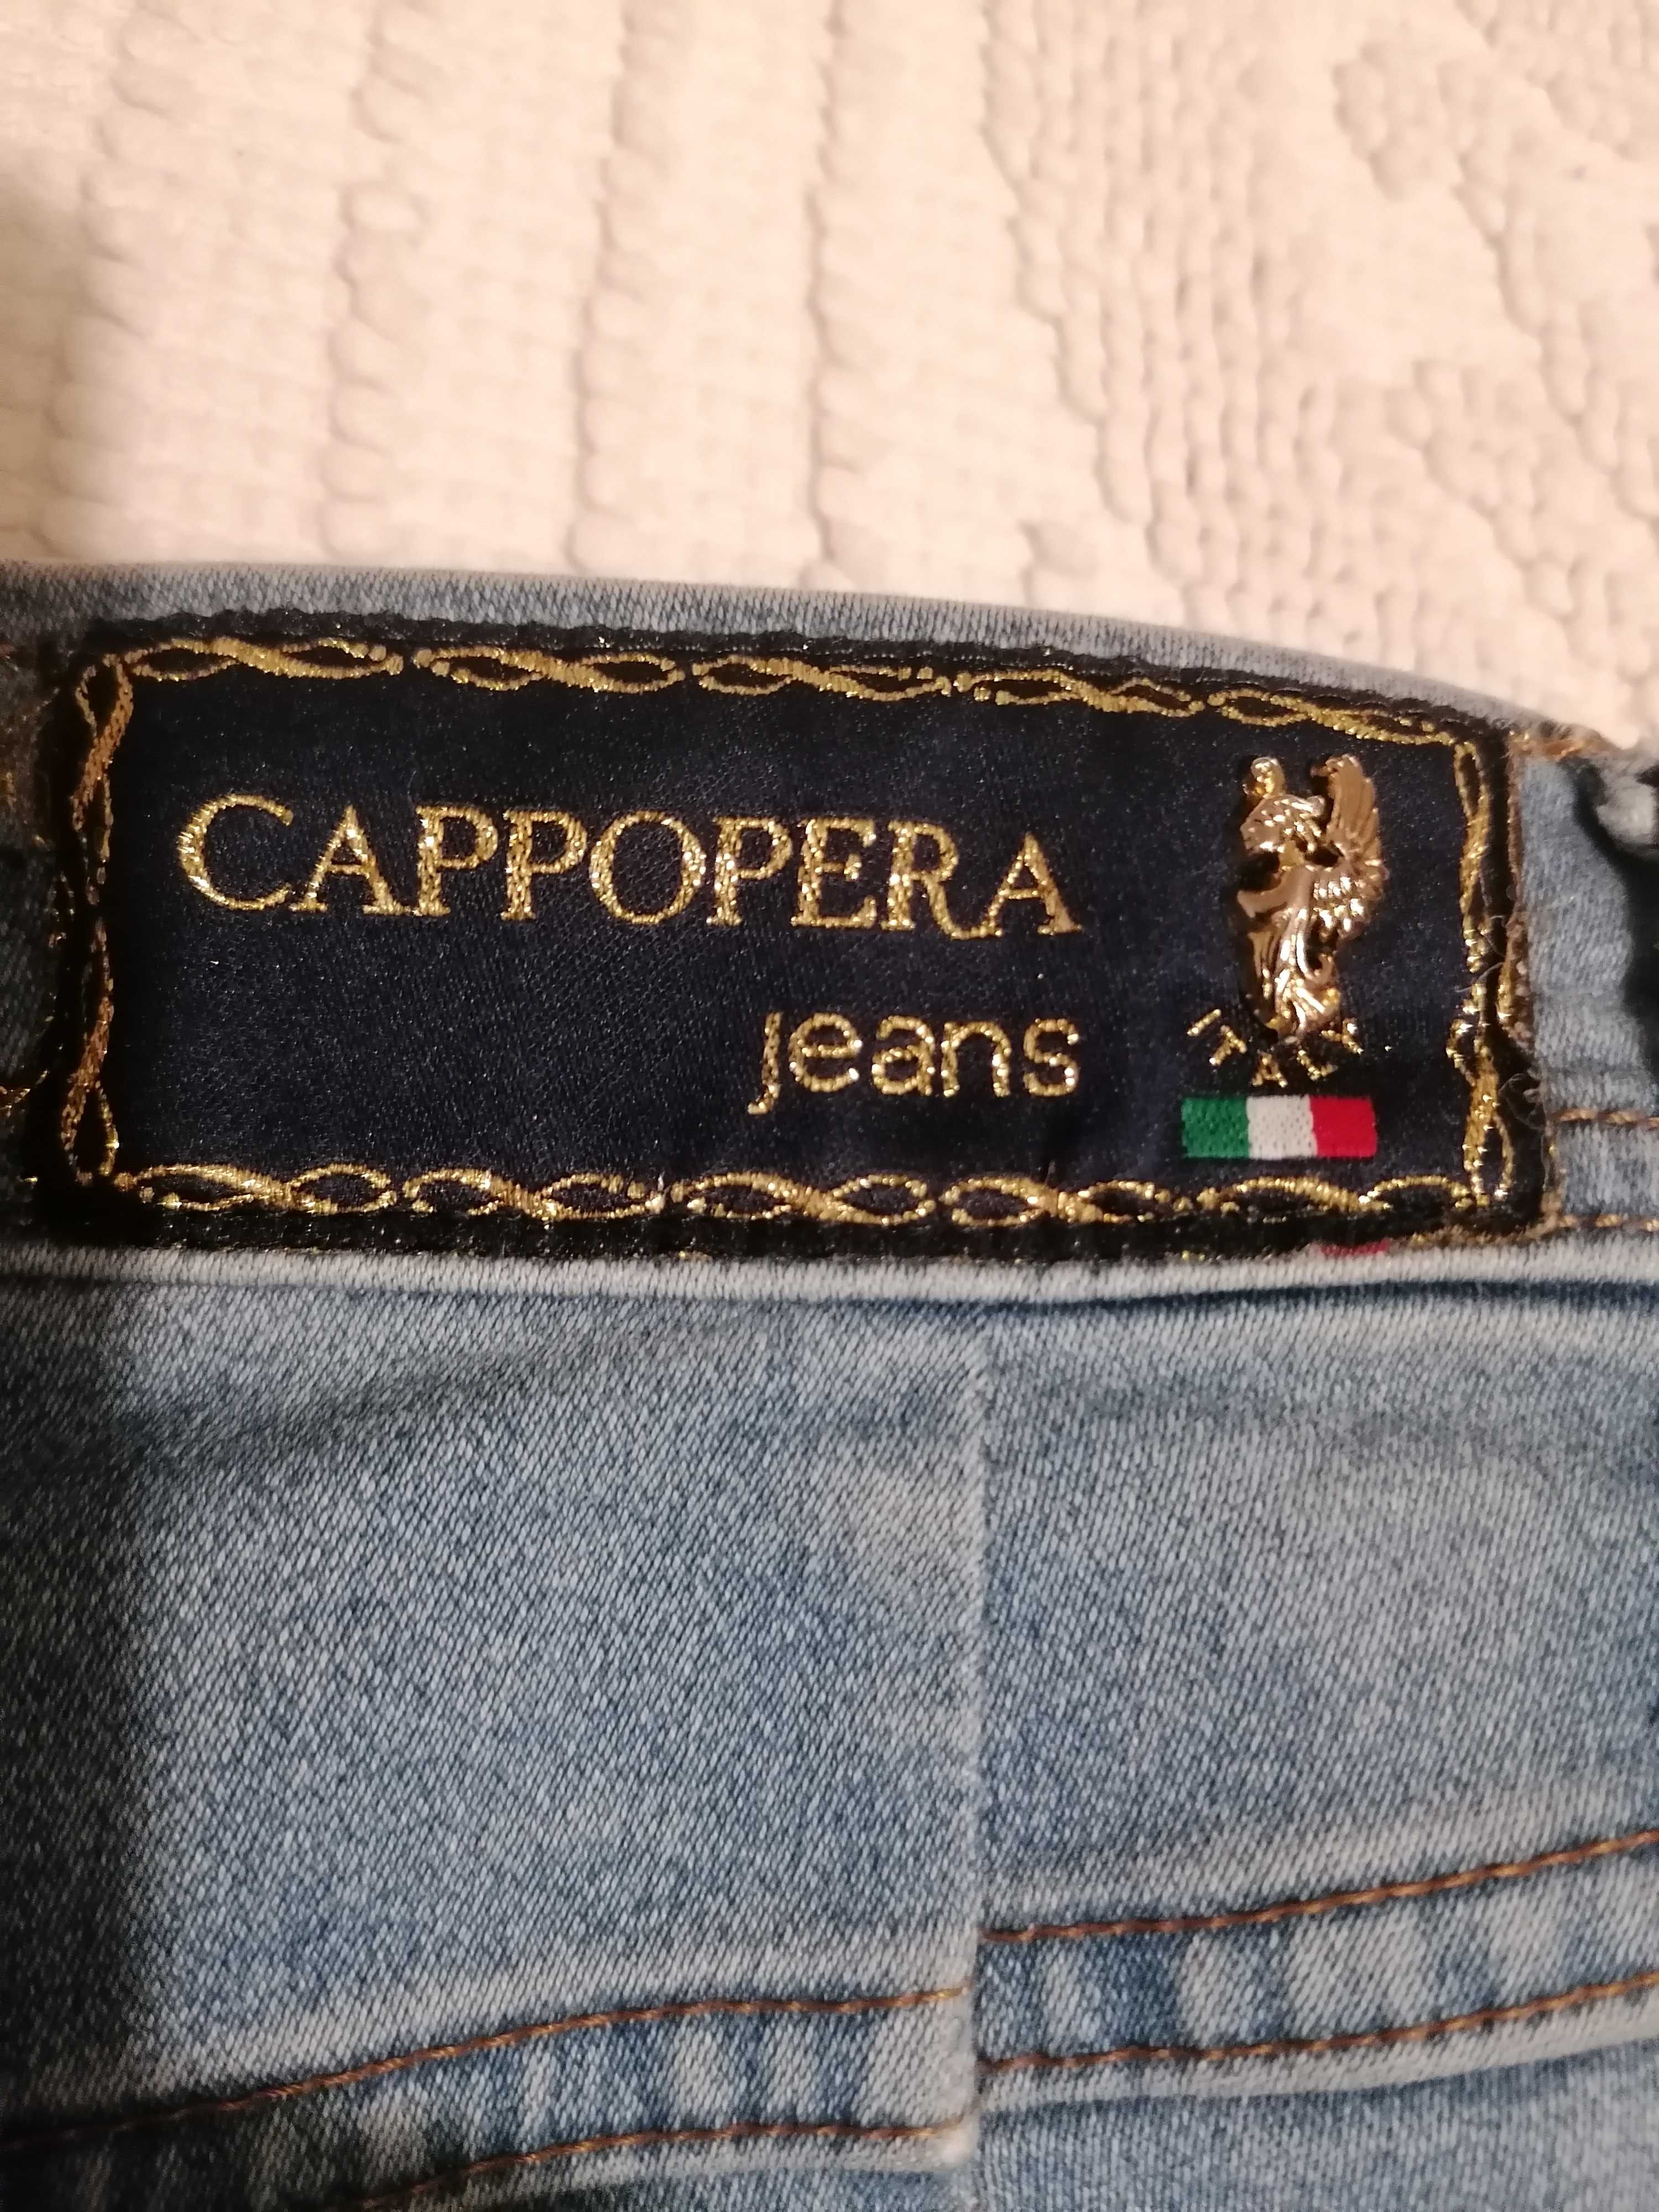 Jeans CAPPOPERA moda Italiana